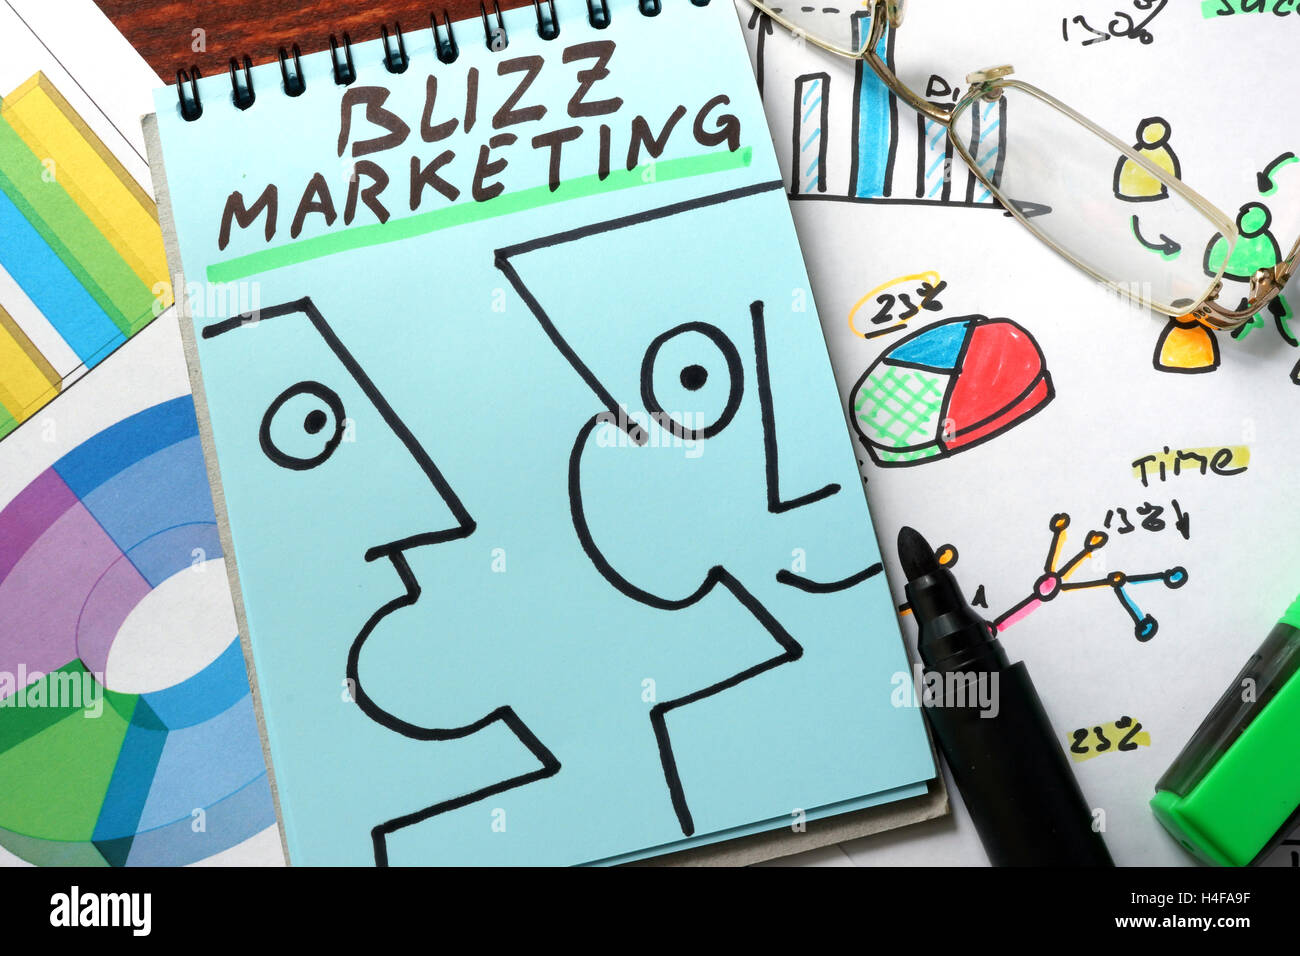 Buzz Marketing auf blauem Papier geschrieben. Stockfoto